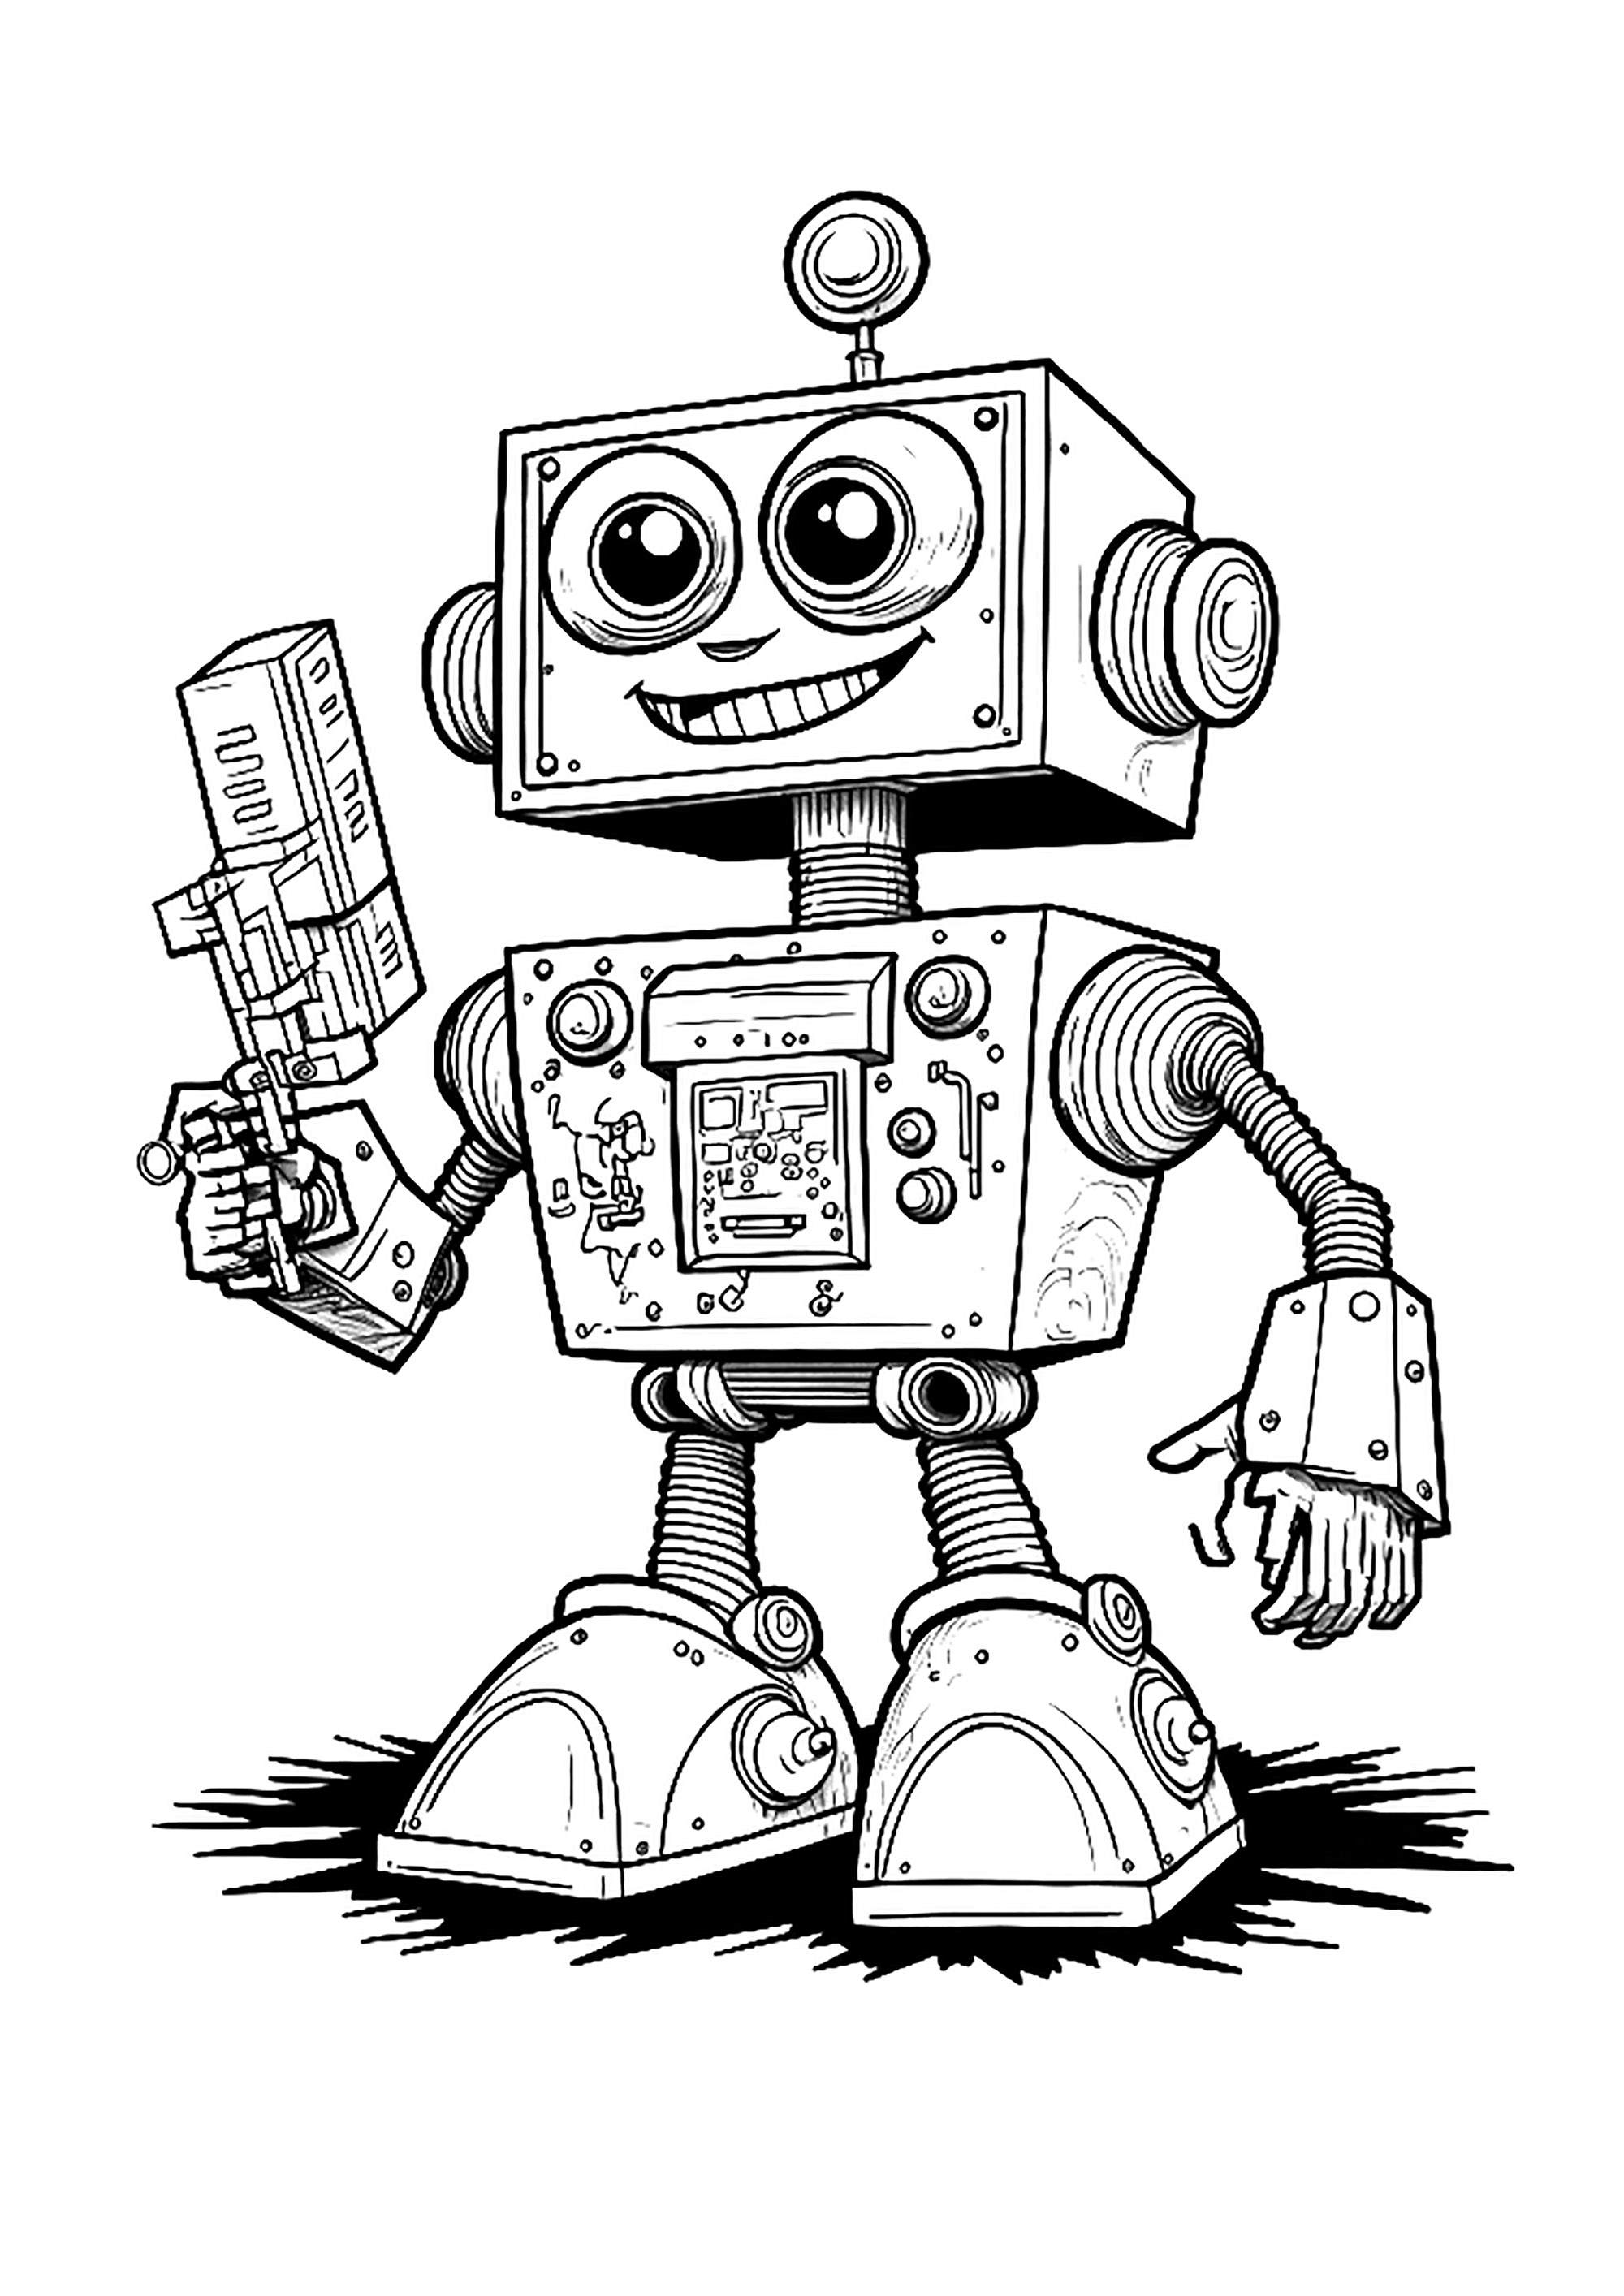 Bonito robot al estilo de los de los 80